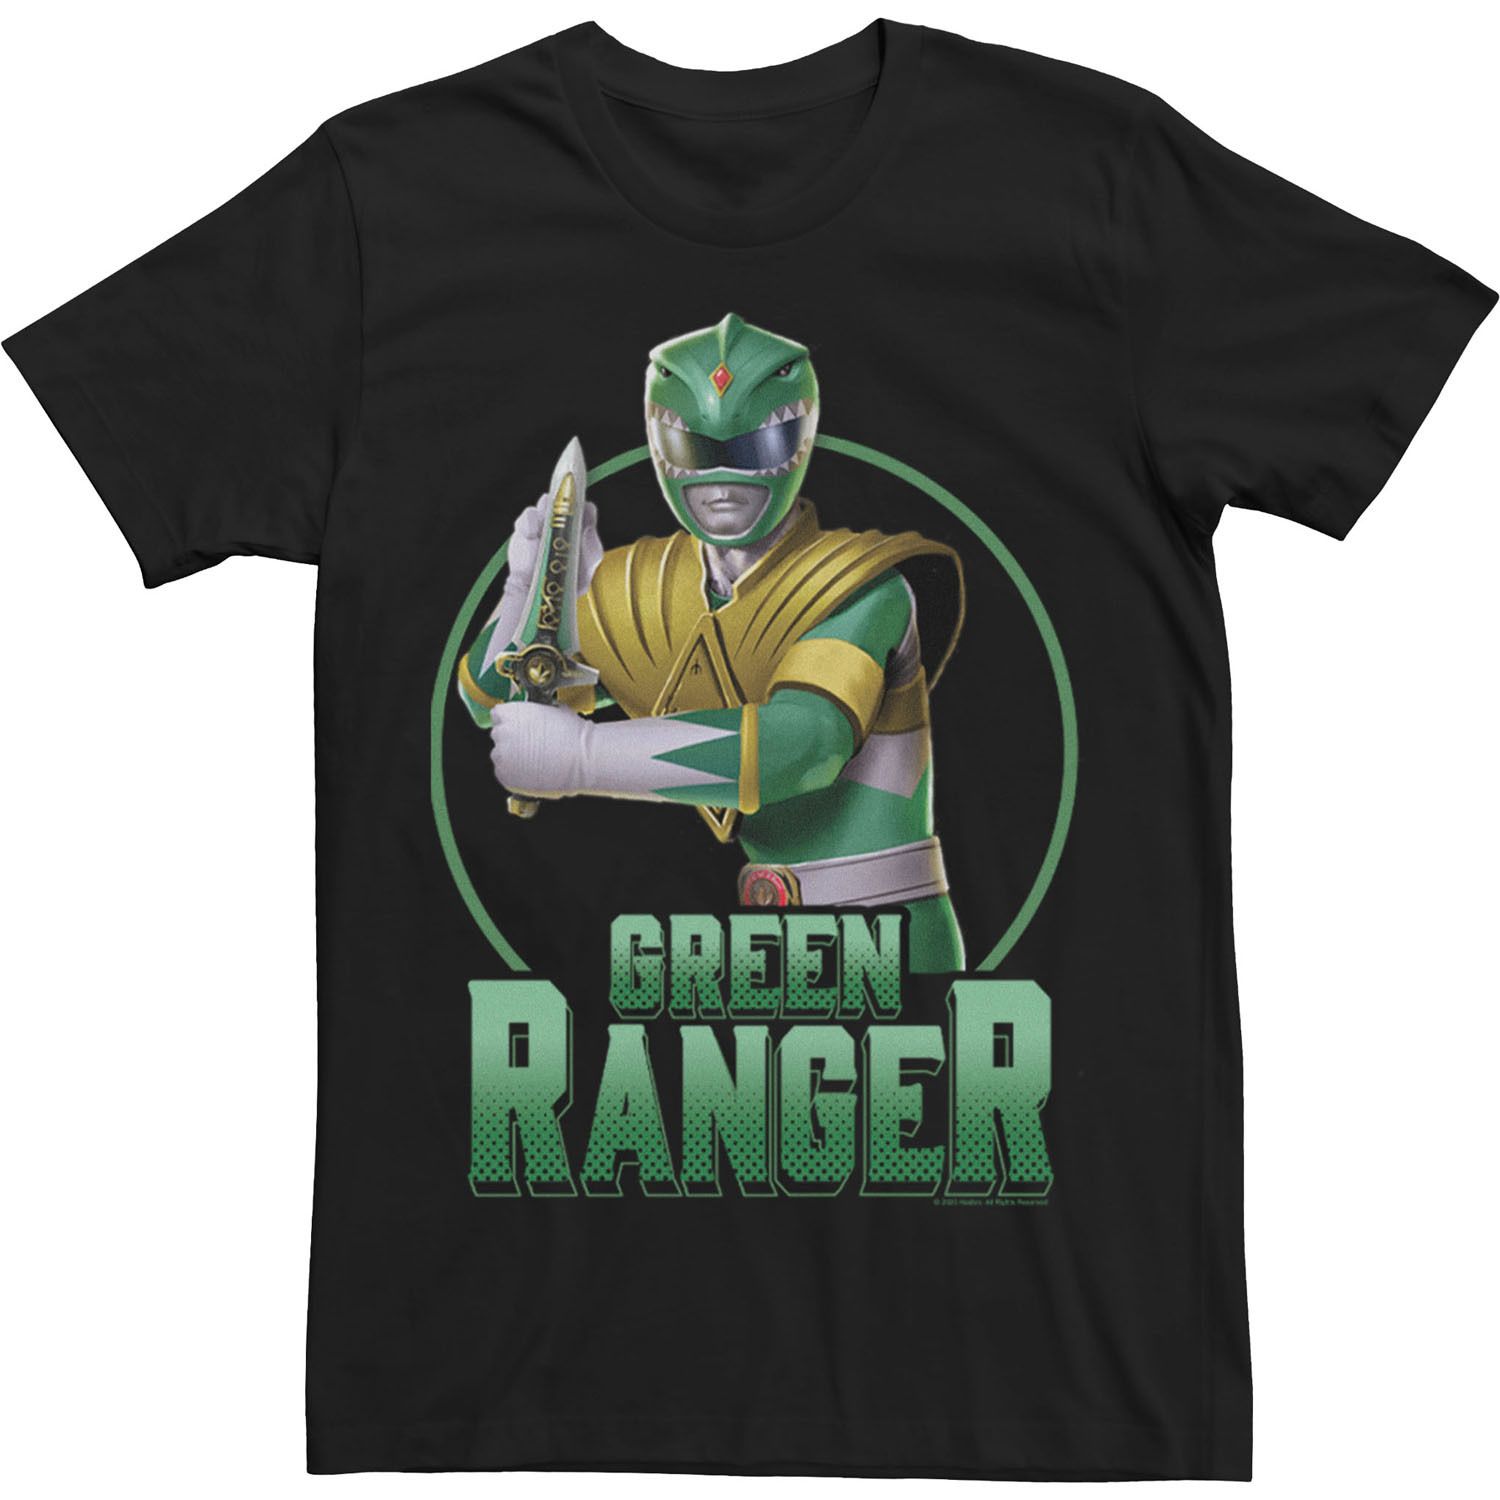 Мужская футболка Power Rangers Green Ranger с простым портретом Licensed Character